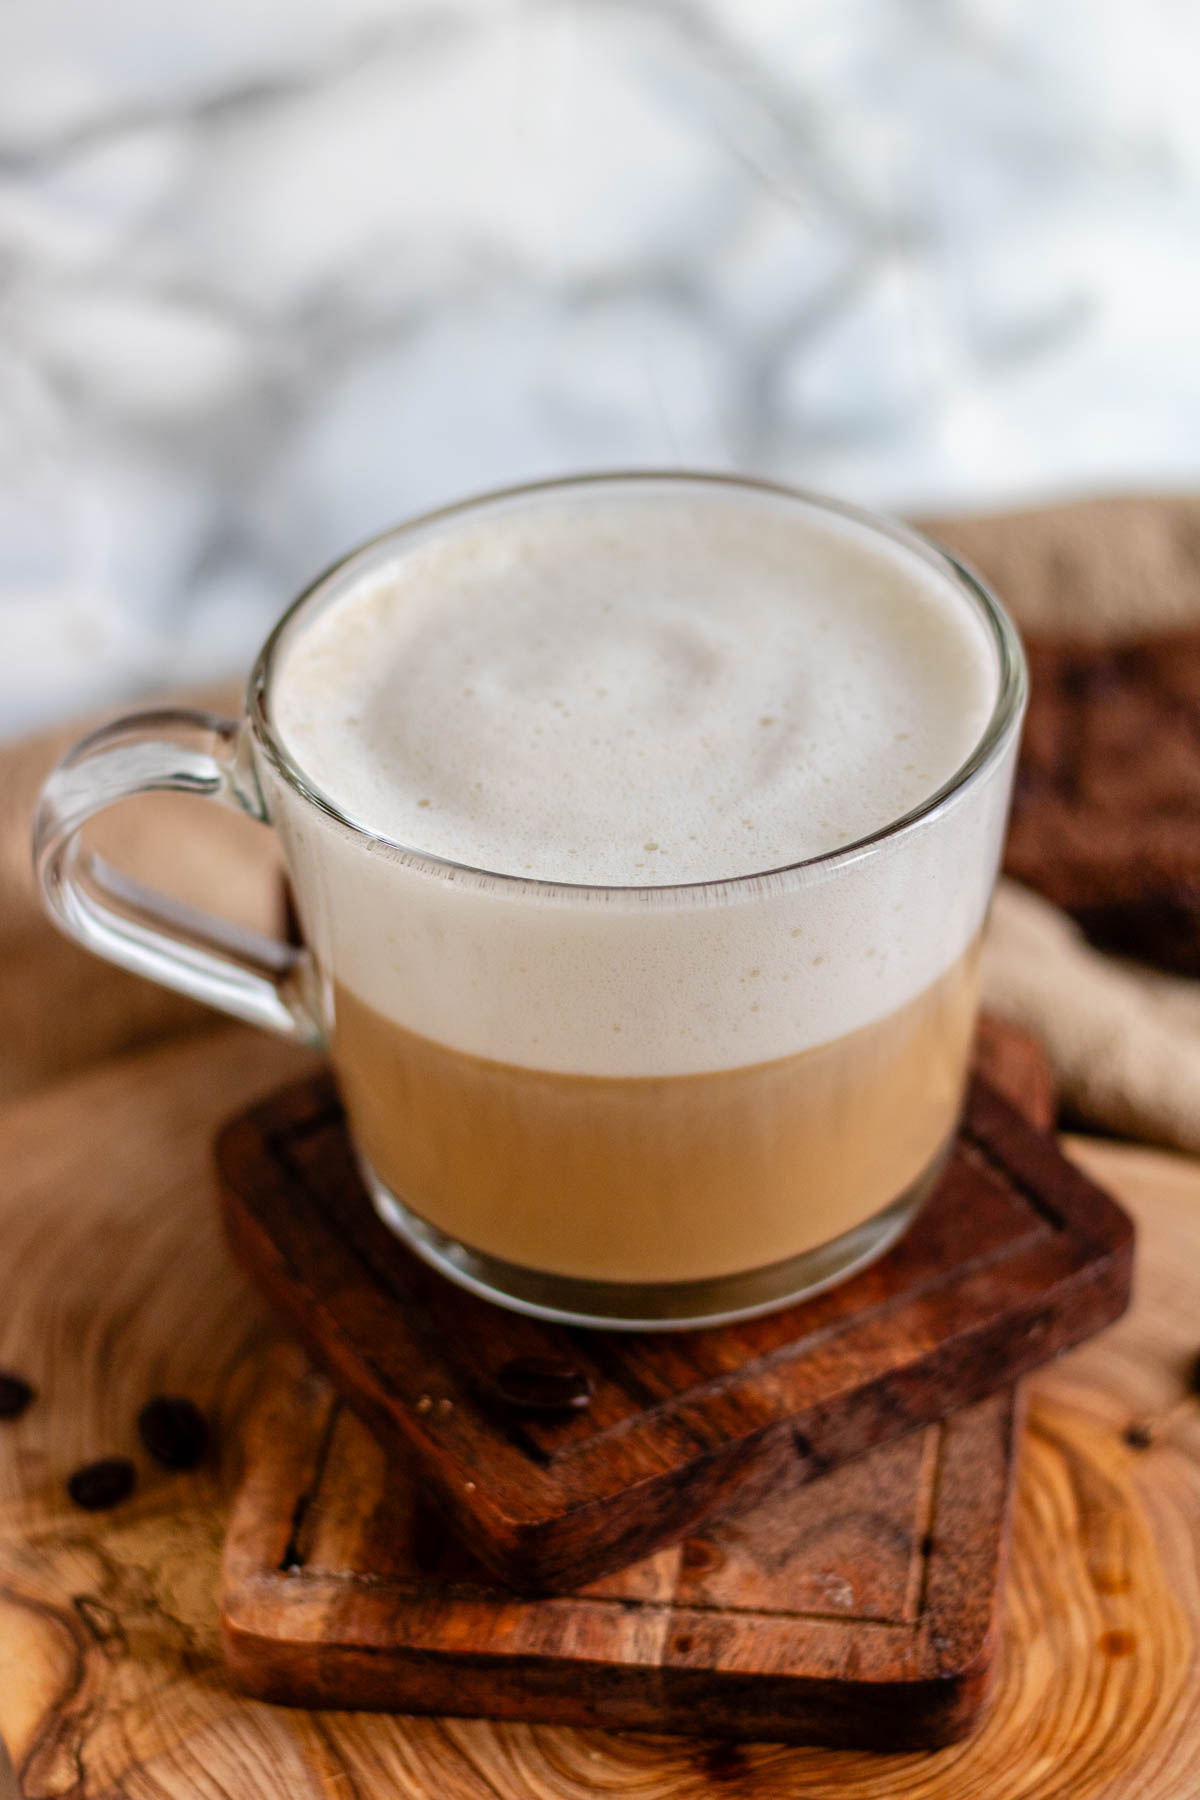 Vanilla oat latte in a glass mug on a wooden board.